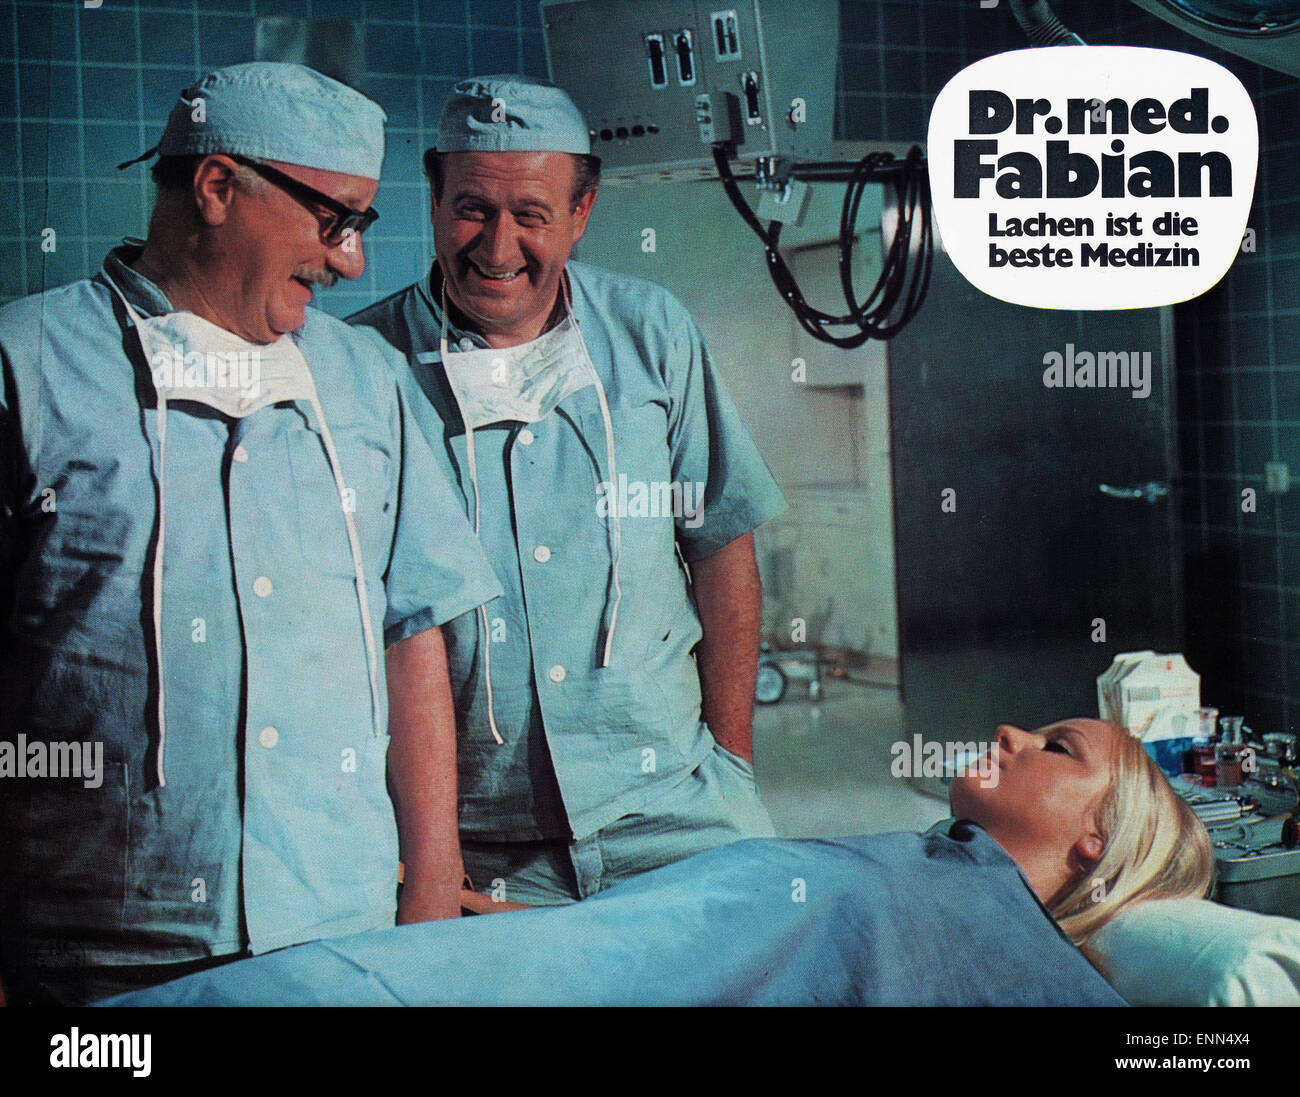 Il dott. med. Fabian - Lachen ist die beste Medizin, Deutschland 1969, Regie: Harald Reinl, Darsteller: Hans Joachim Kulenkampff, Mar Foto Stock